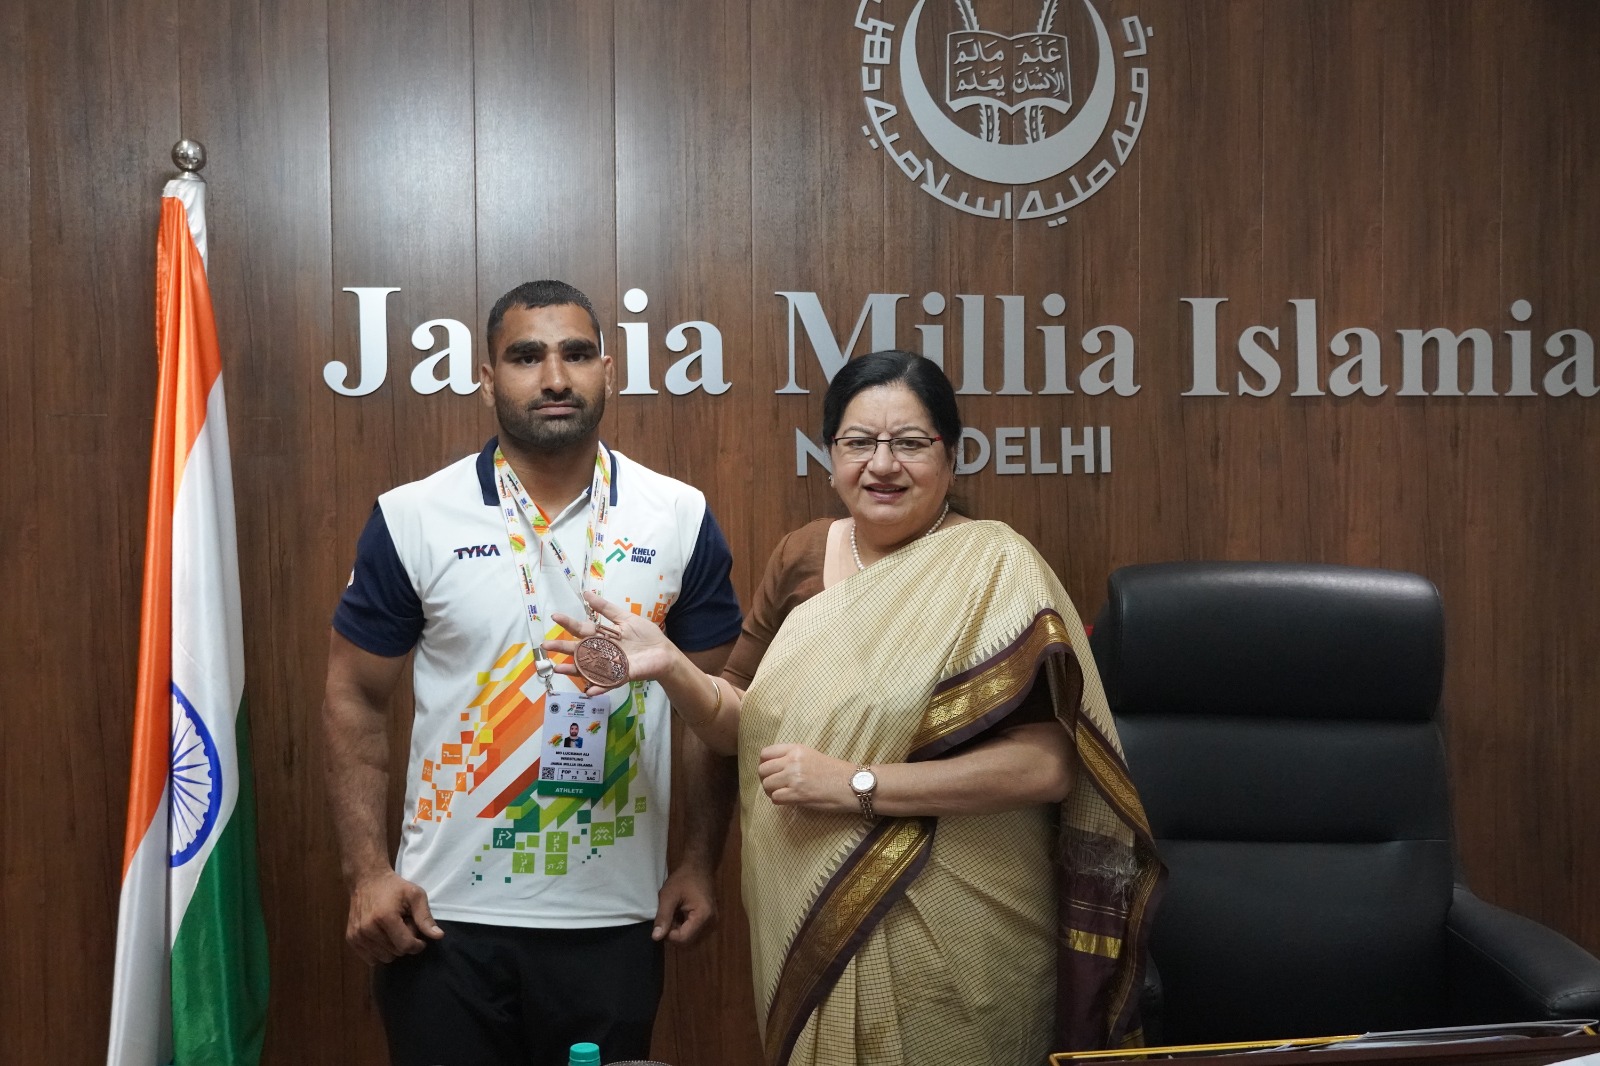 जामिया के लुकमान अली ने खेलो इंडिया यूनिवर्सिटी गेम्स में कांस्य पदक जीता